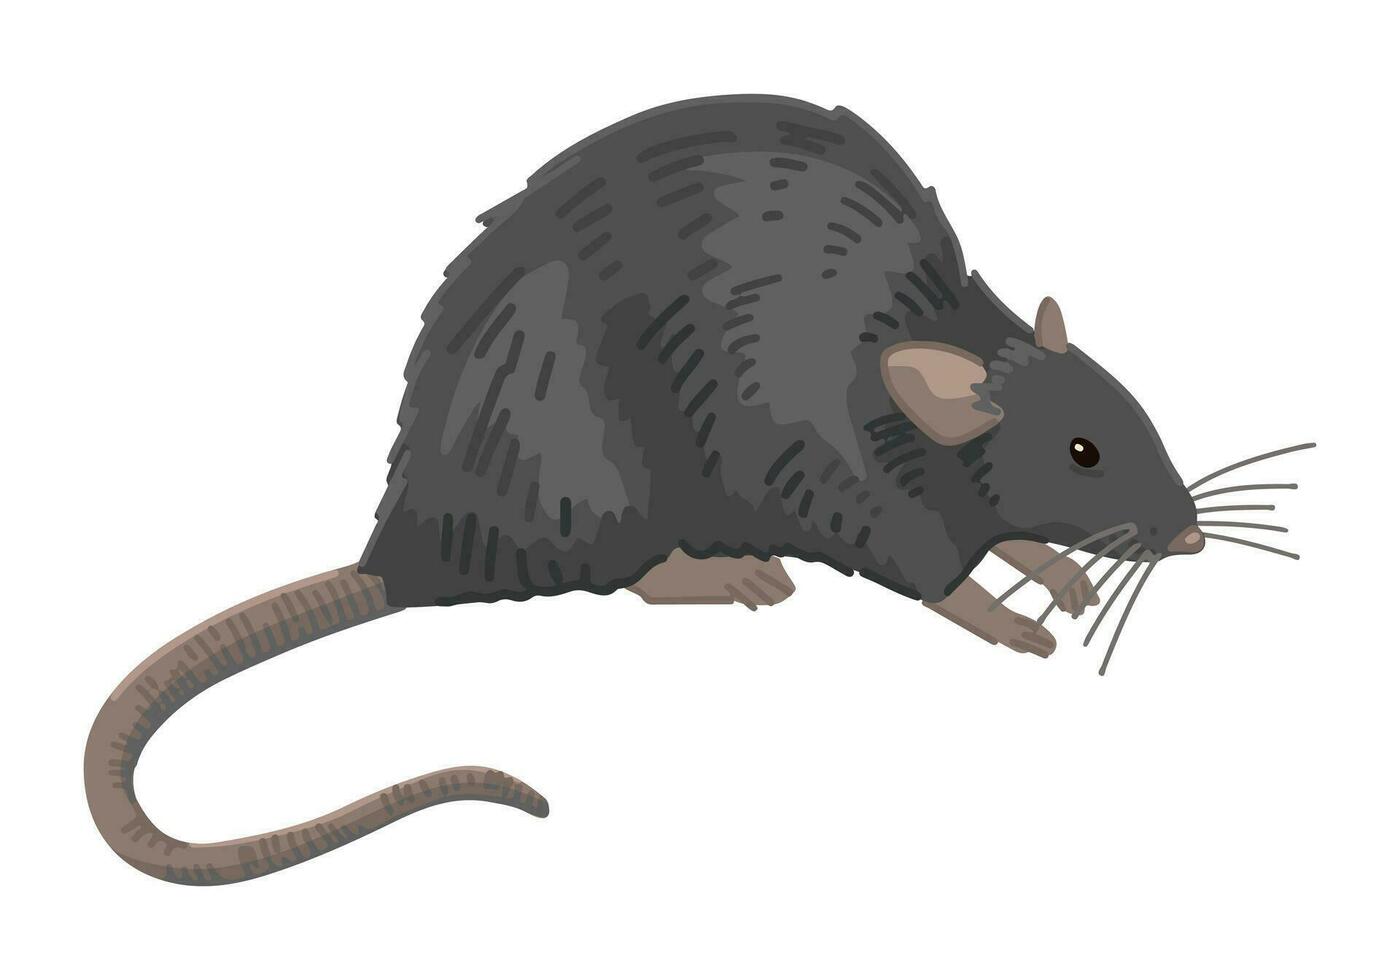 rato clipart isolado em branco. desenho animado estilo desenhando do roedor selvagem animal. dia das Bruxas arrepiante fauna moderno vetor ilustração.